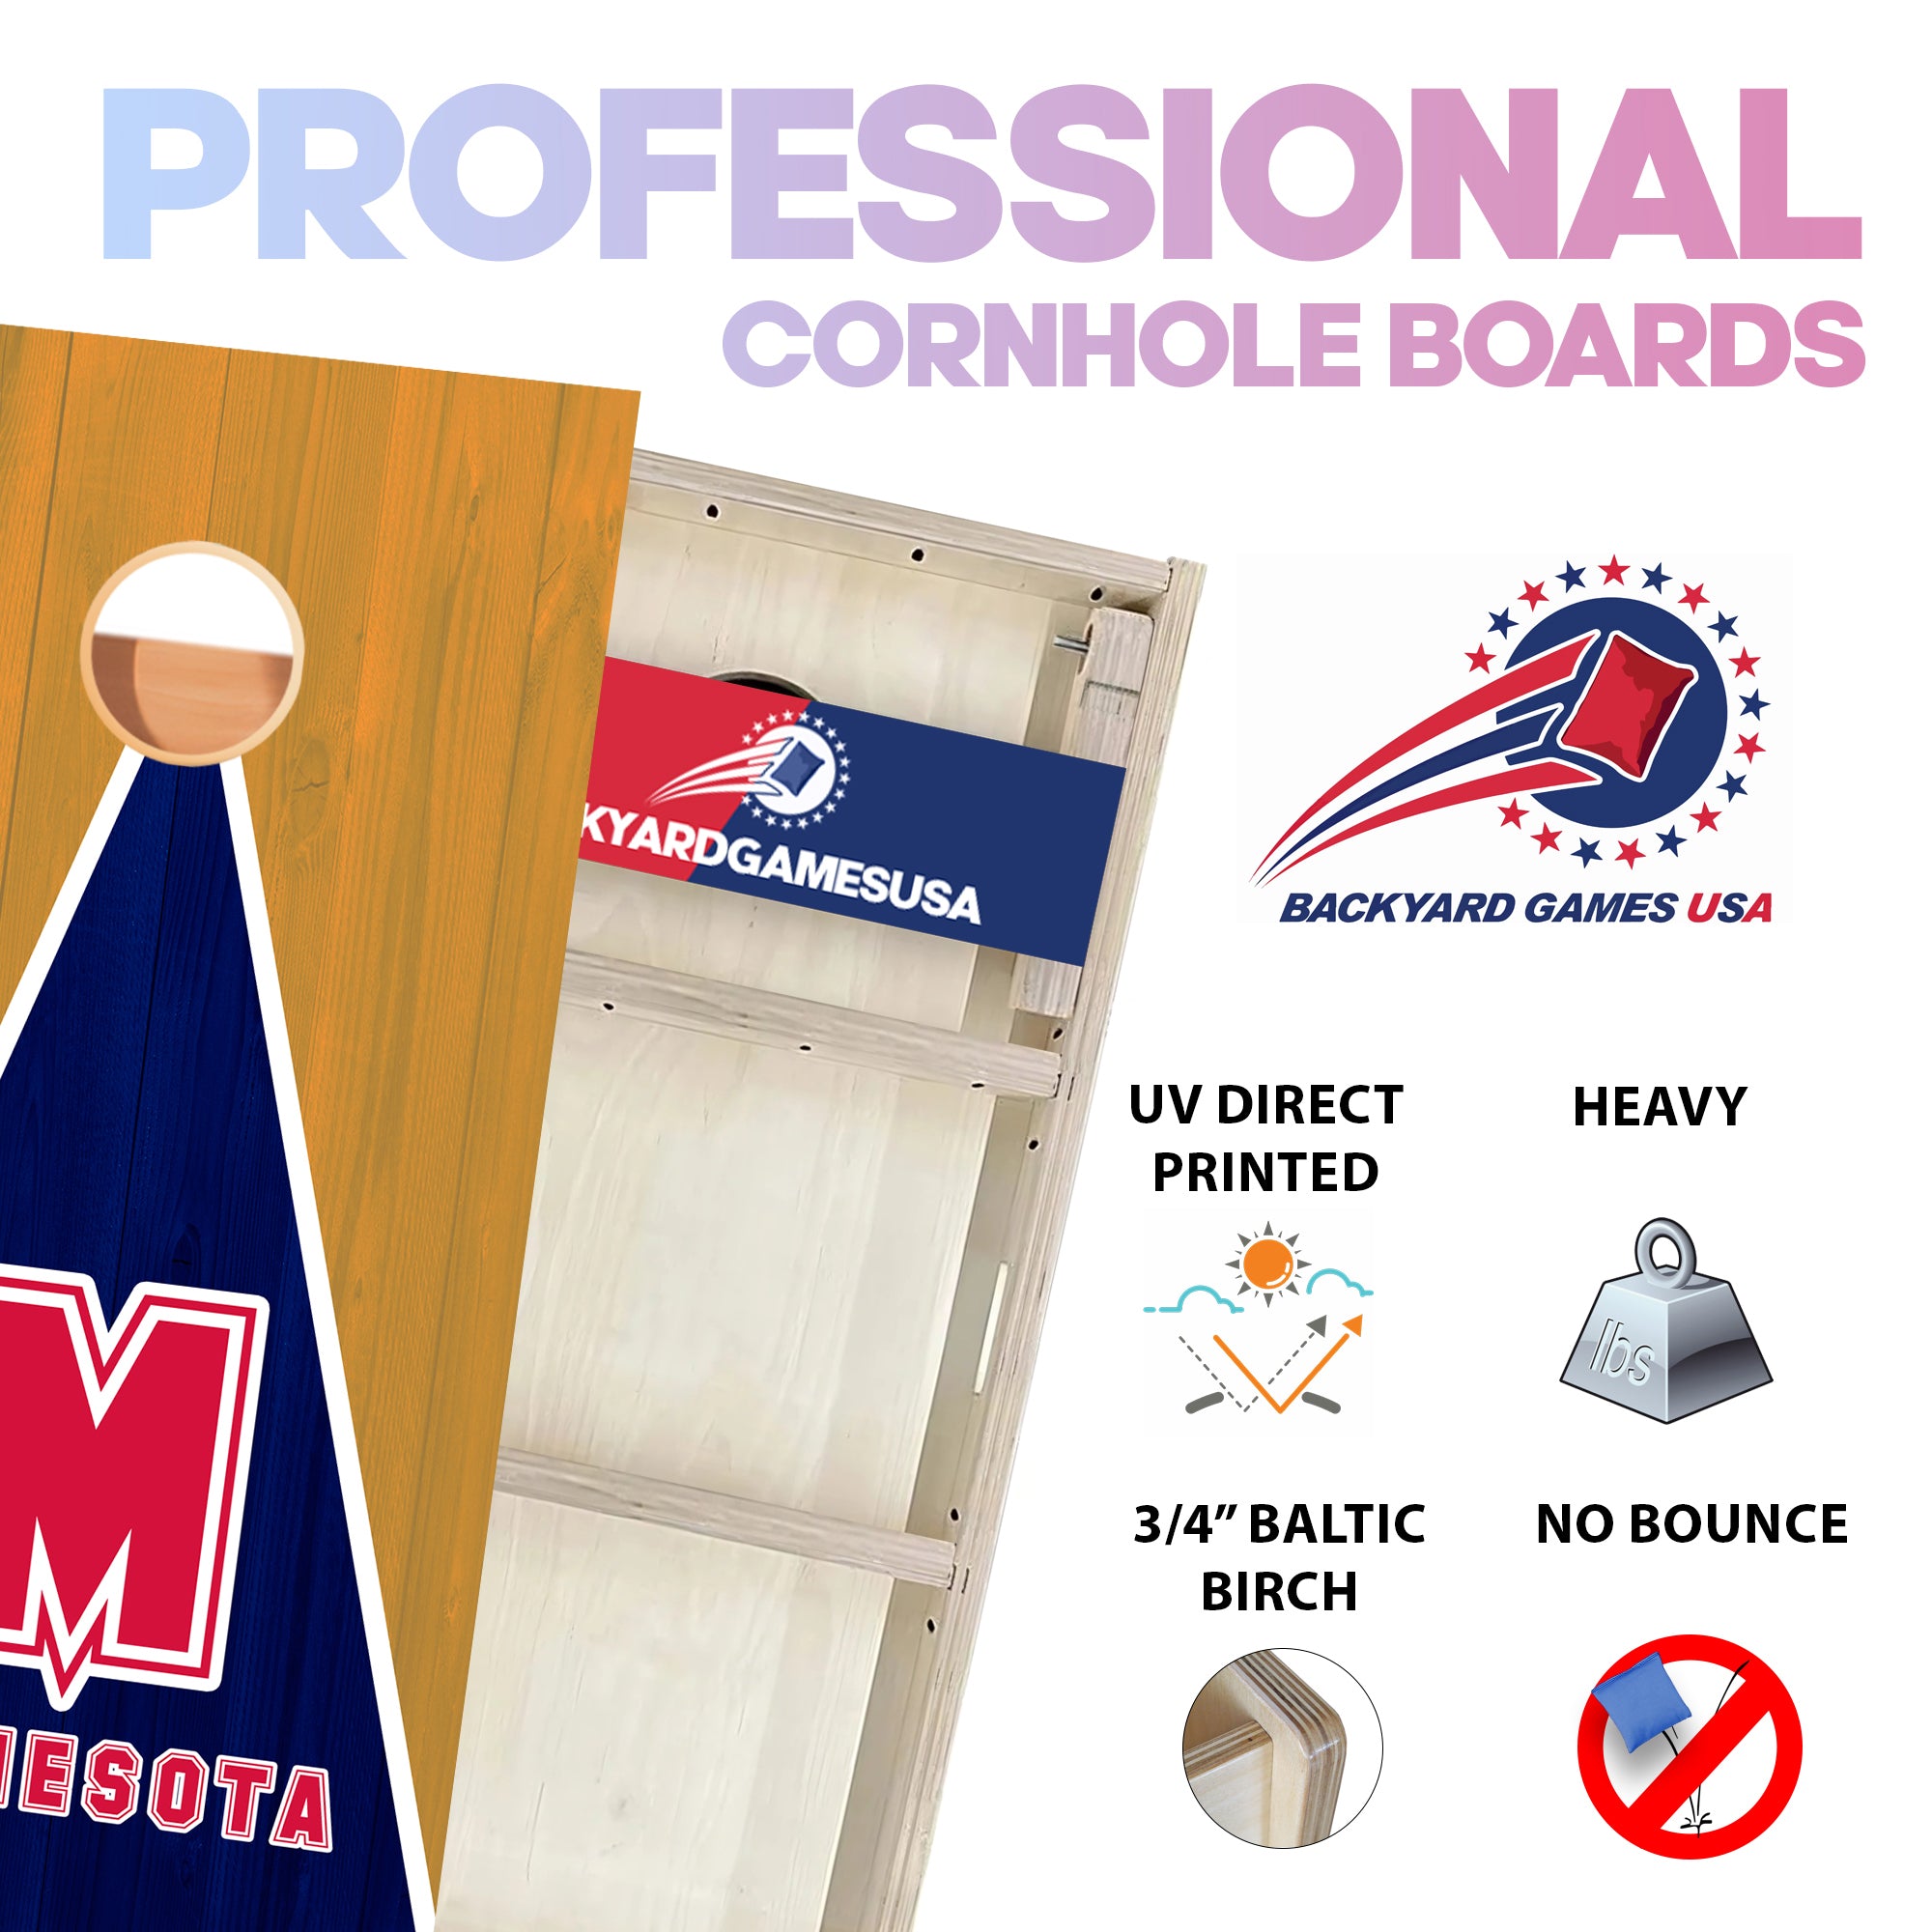 Minnesota Baseball Professional Cornhole Boards